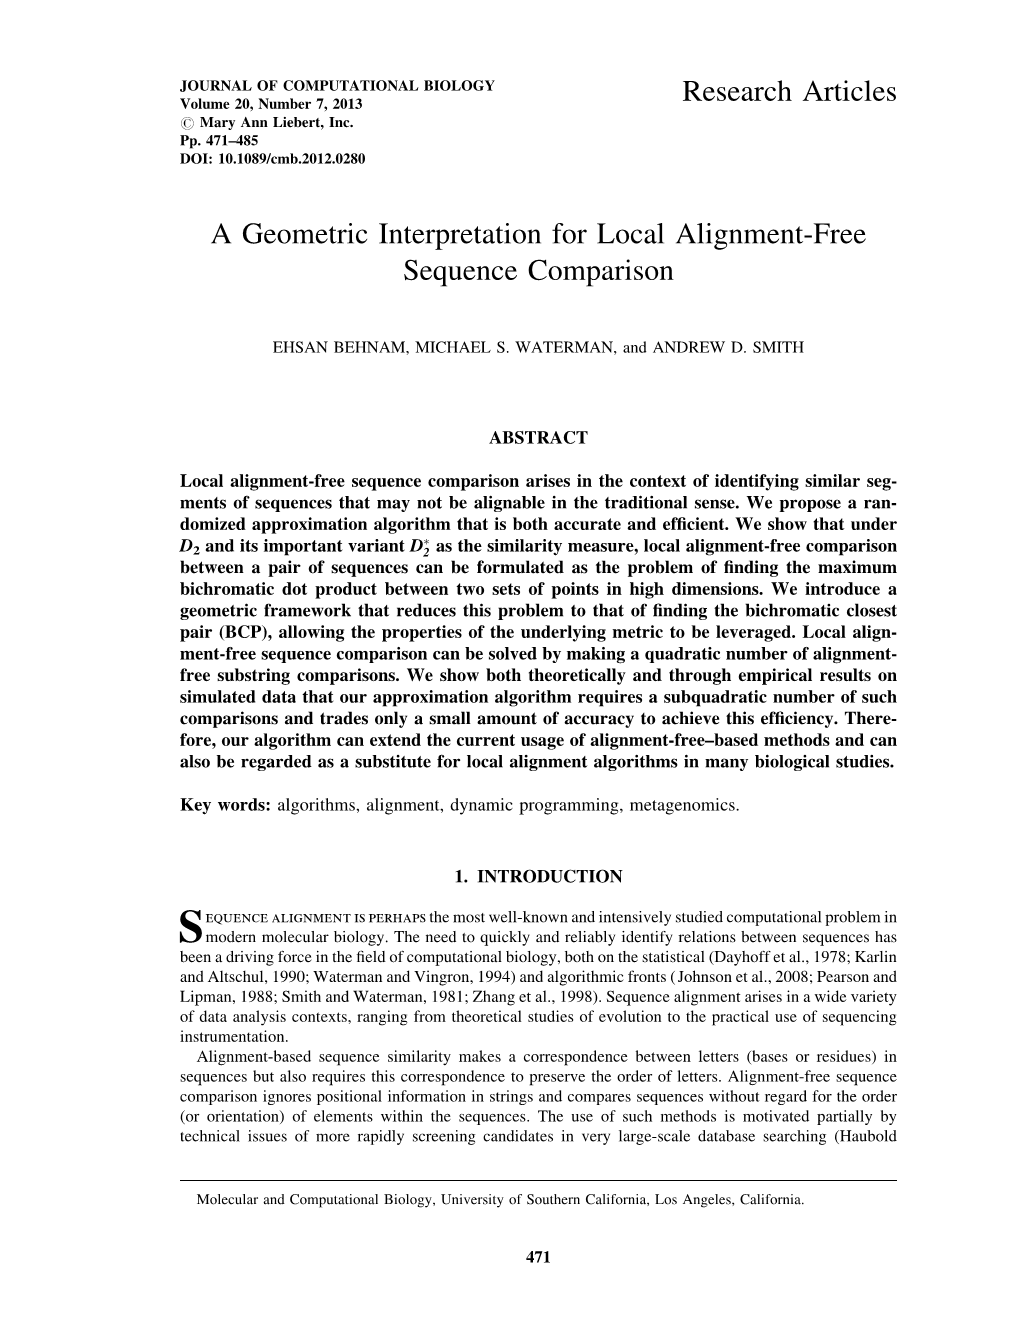 A Geometric Interpretation for Local Alignment-Free Sequence Comparison